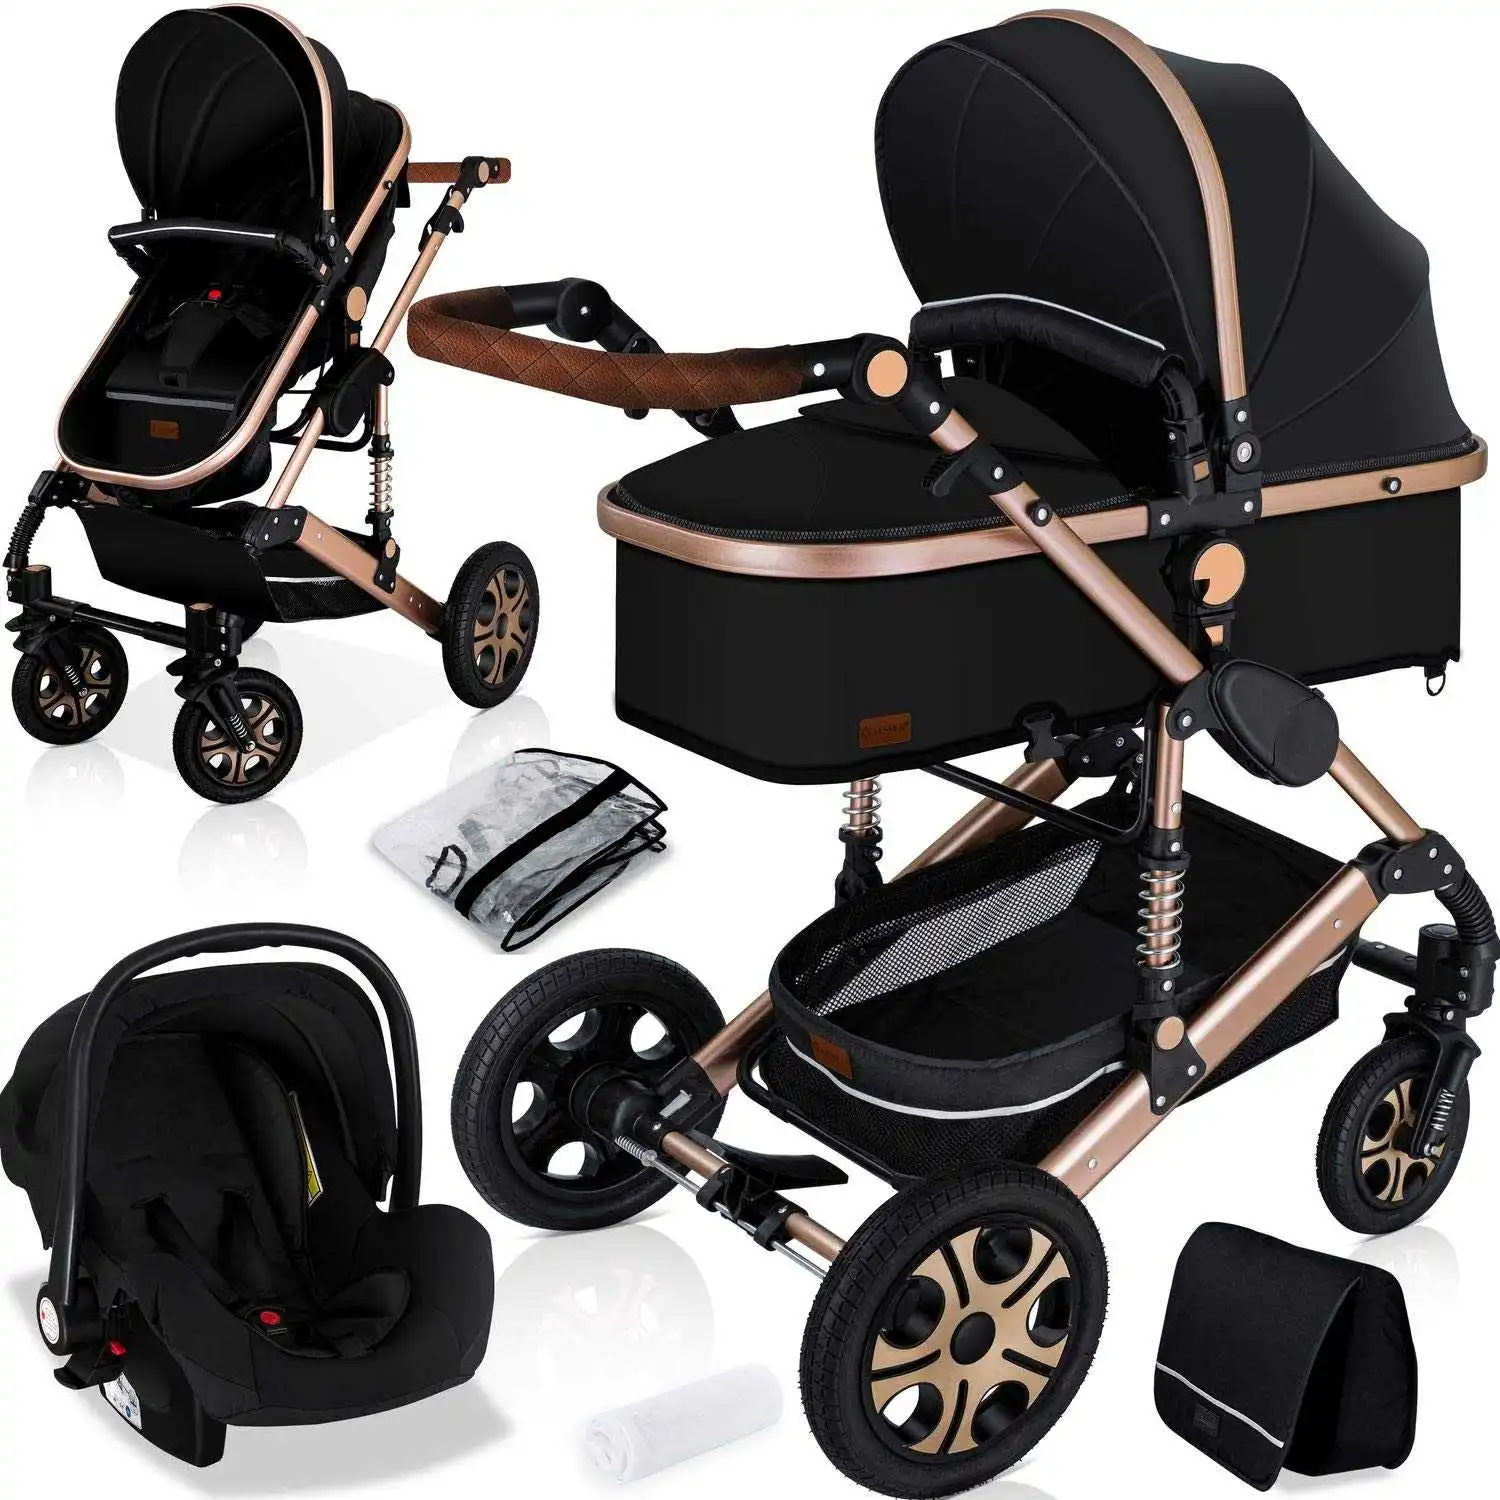 Maak een naam Krimpen praktijk Fashionable Baby Kinderwagen 3 In 1 Compact Stroller Luxury Pram For  Newborn - Buy Belecoo Stroller,Foldable 3 In 1 Baby Stroller With Carseat, Baby Stroller 3 In 1 Luxury Baby Pram Product on Alibaba.com